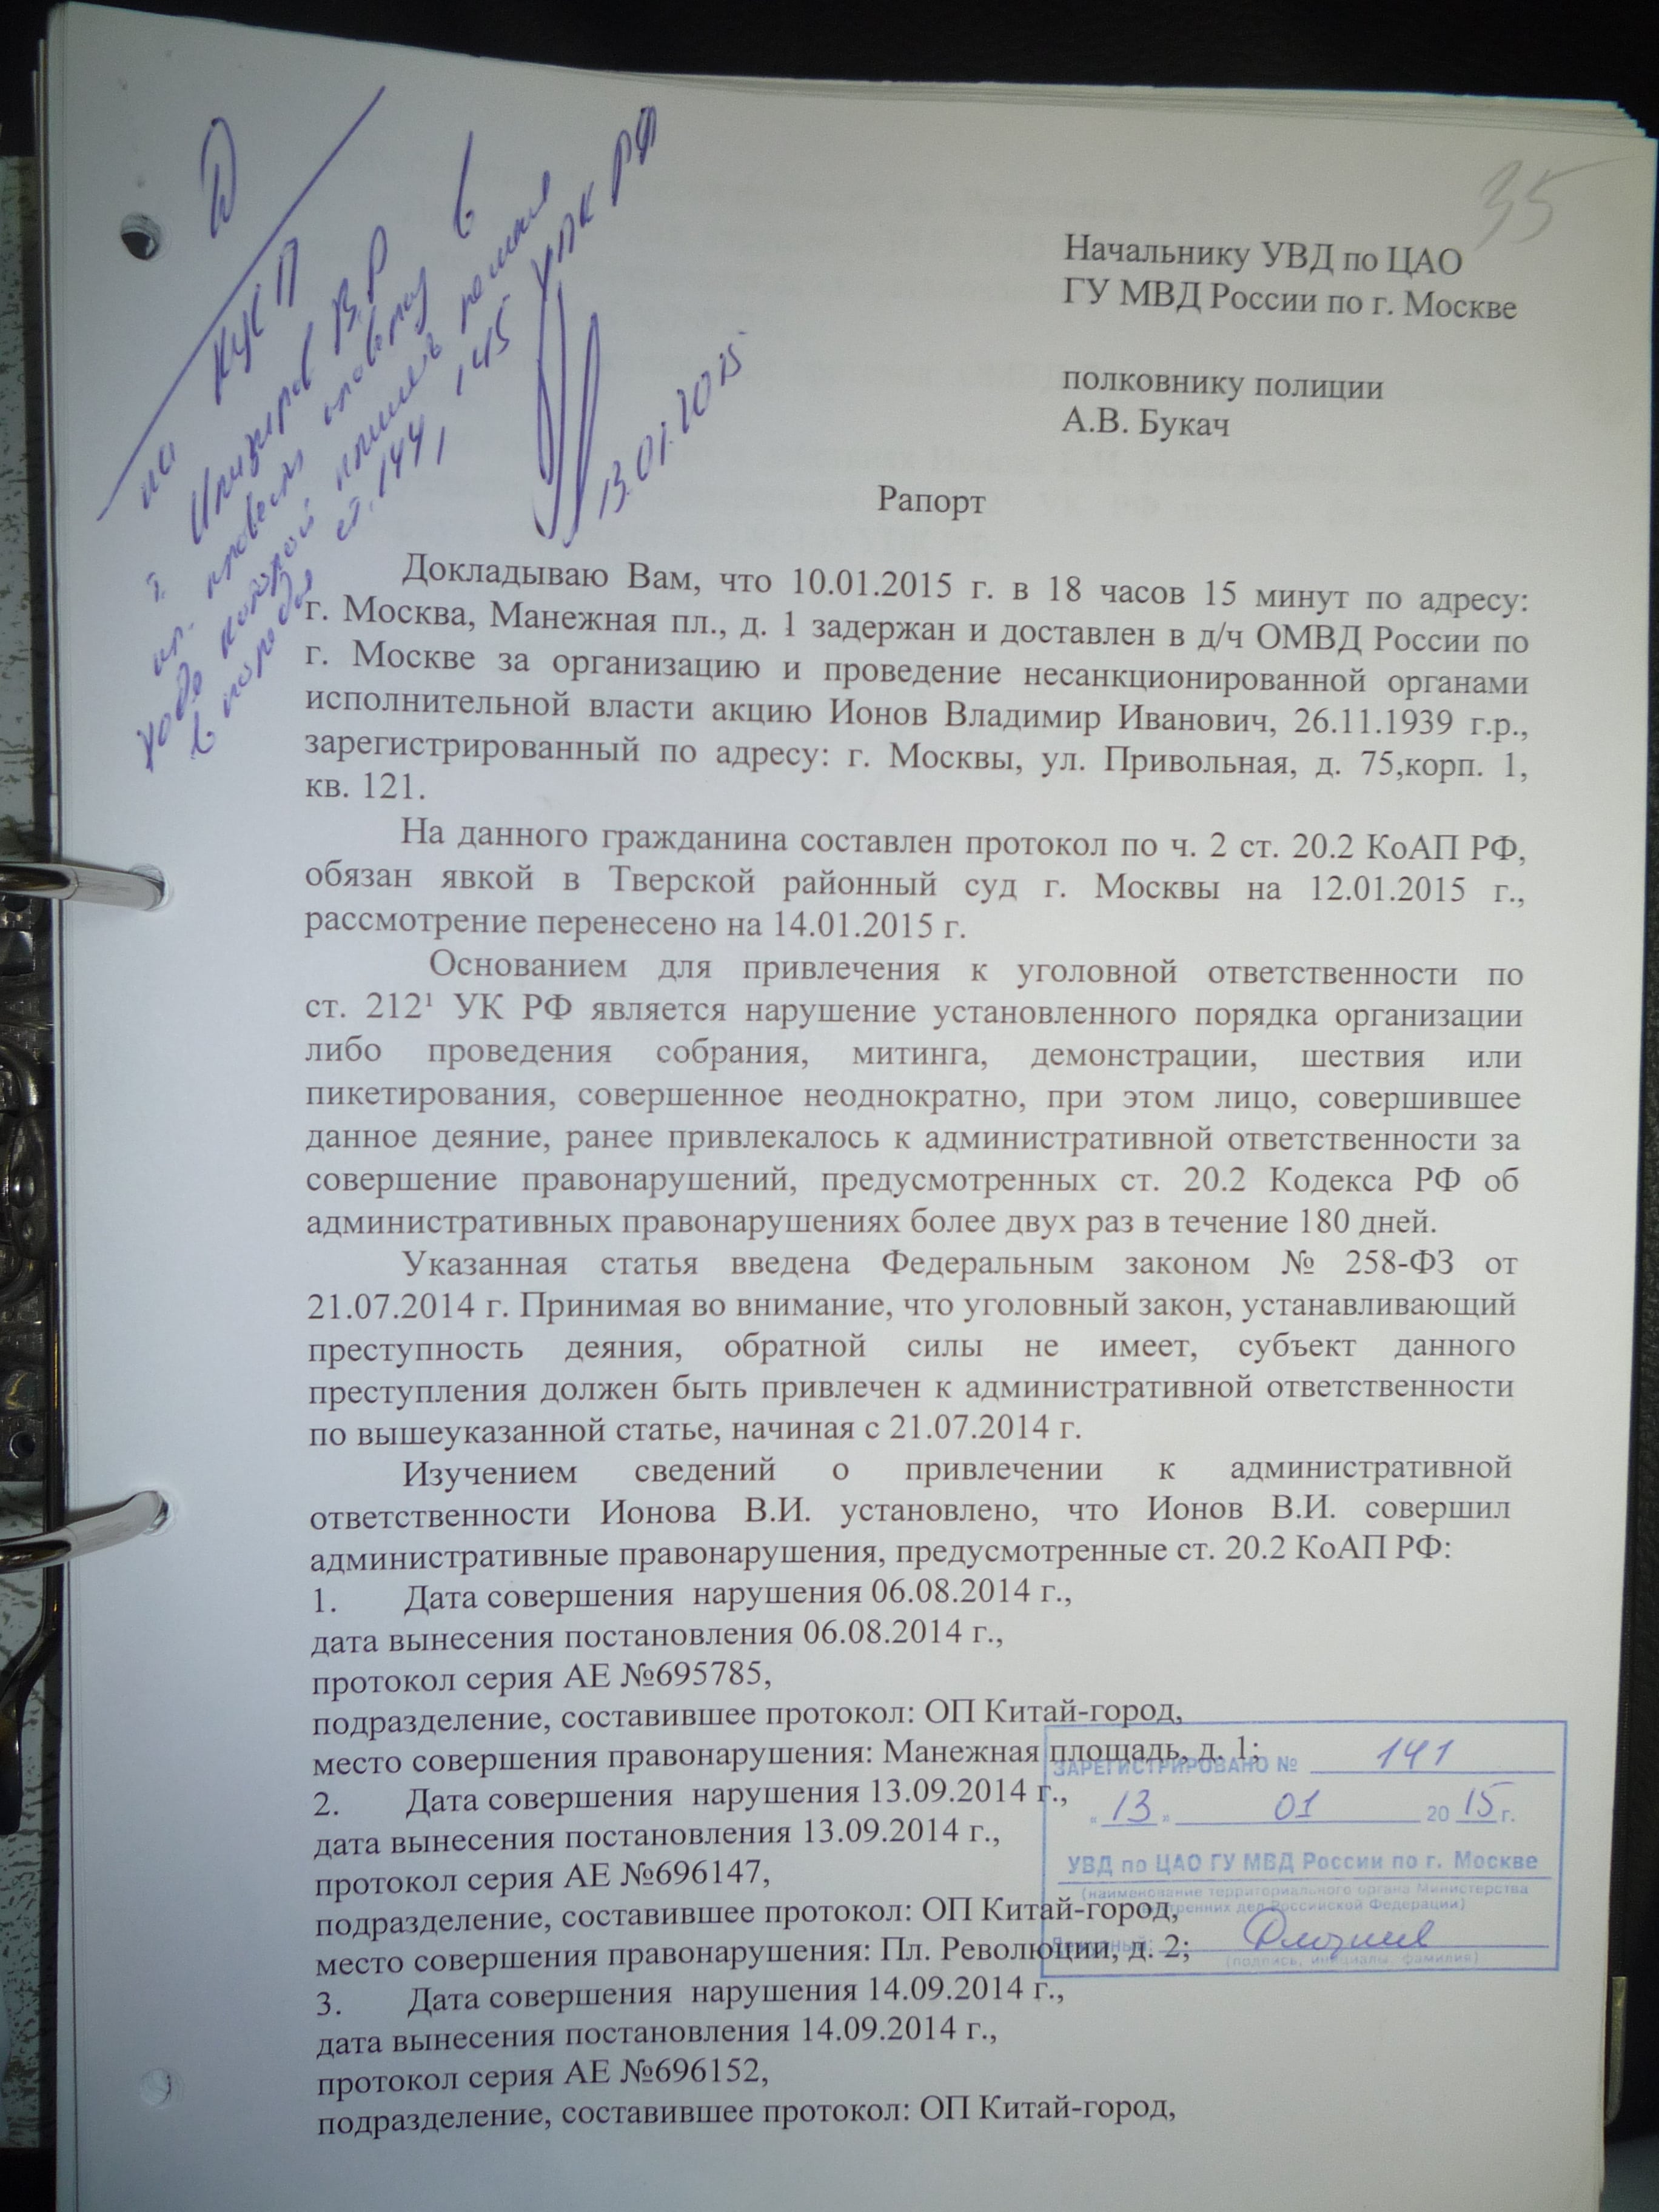 Materials of Vladimir Ionov's criminal case